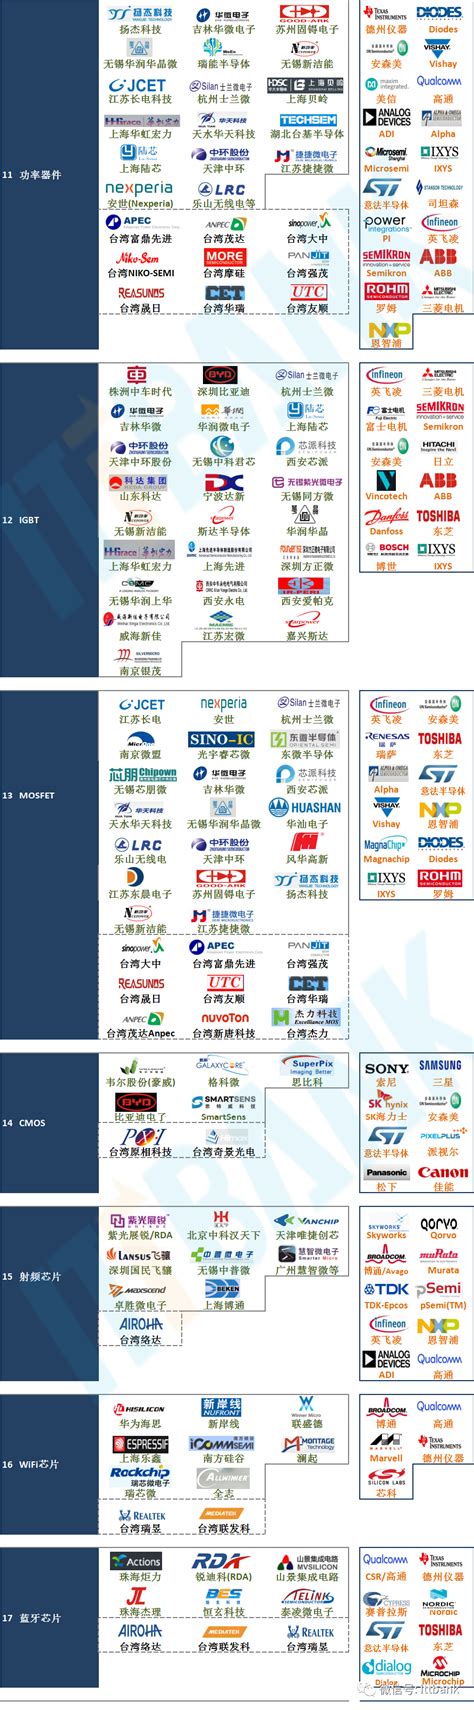 中国网络安全细分领域矩阵图(Matrix 2019.11)发布 - 安全牛